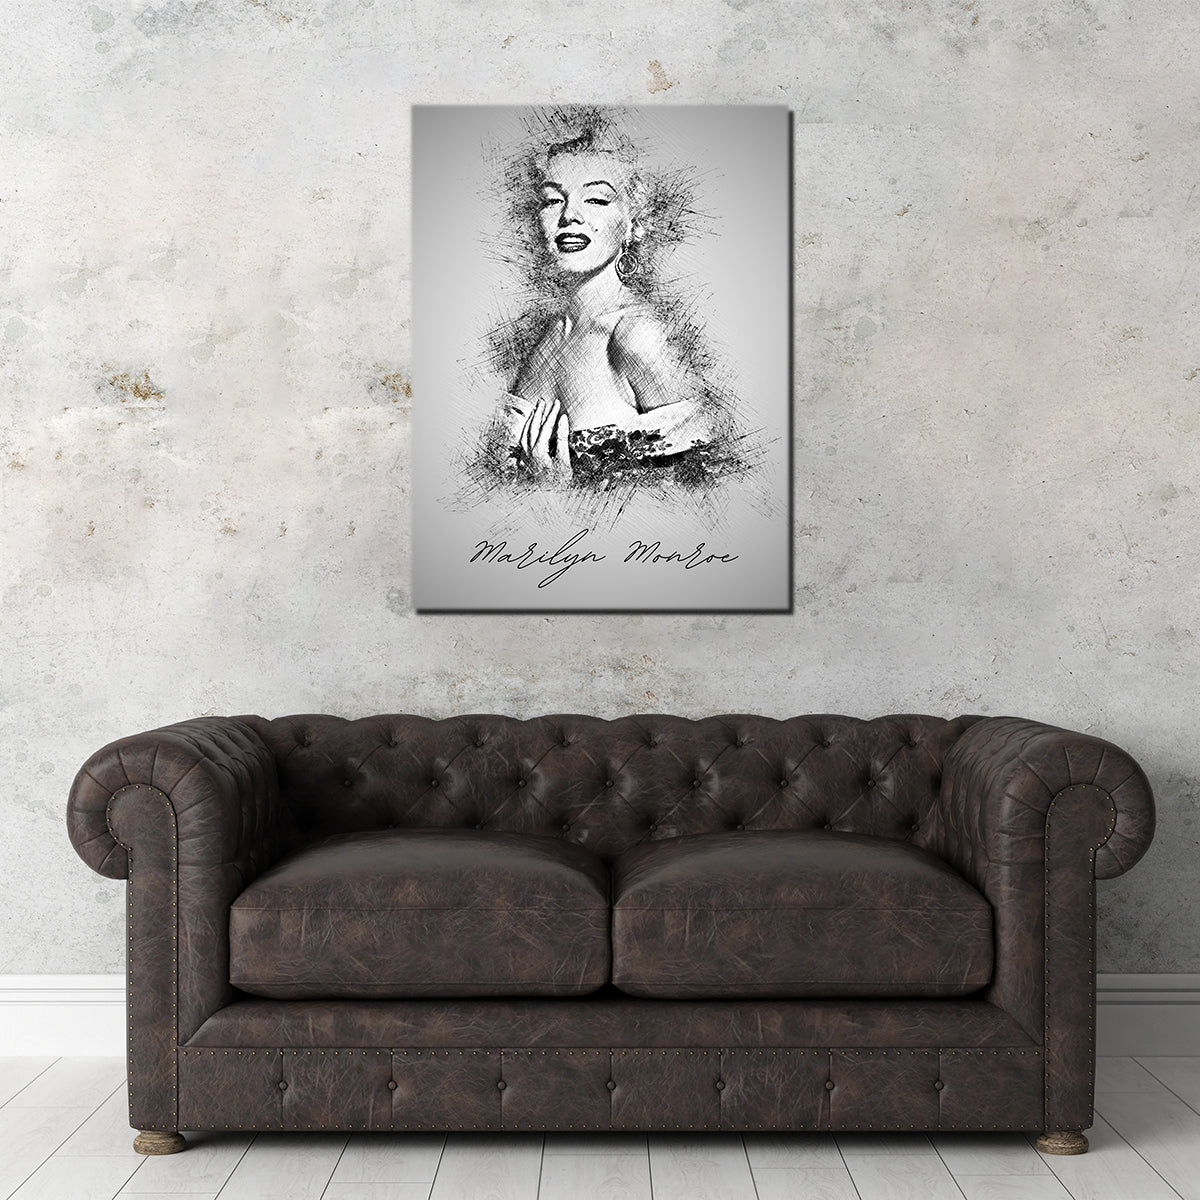 Marilyn Monroe Sketch